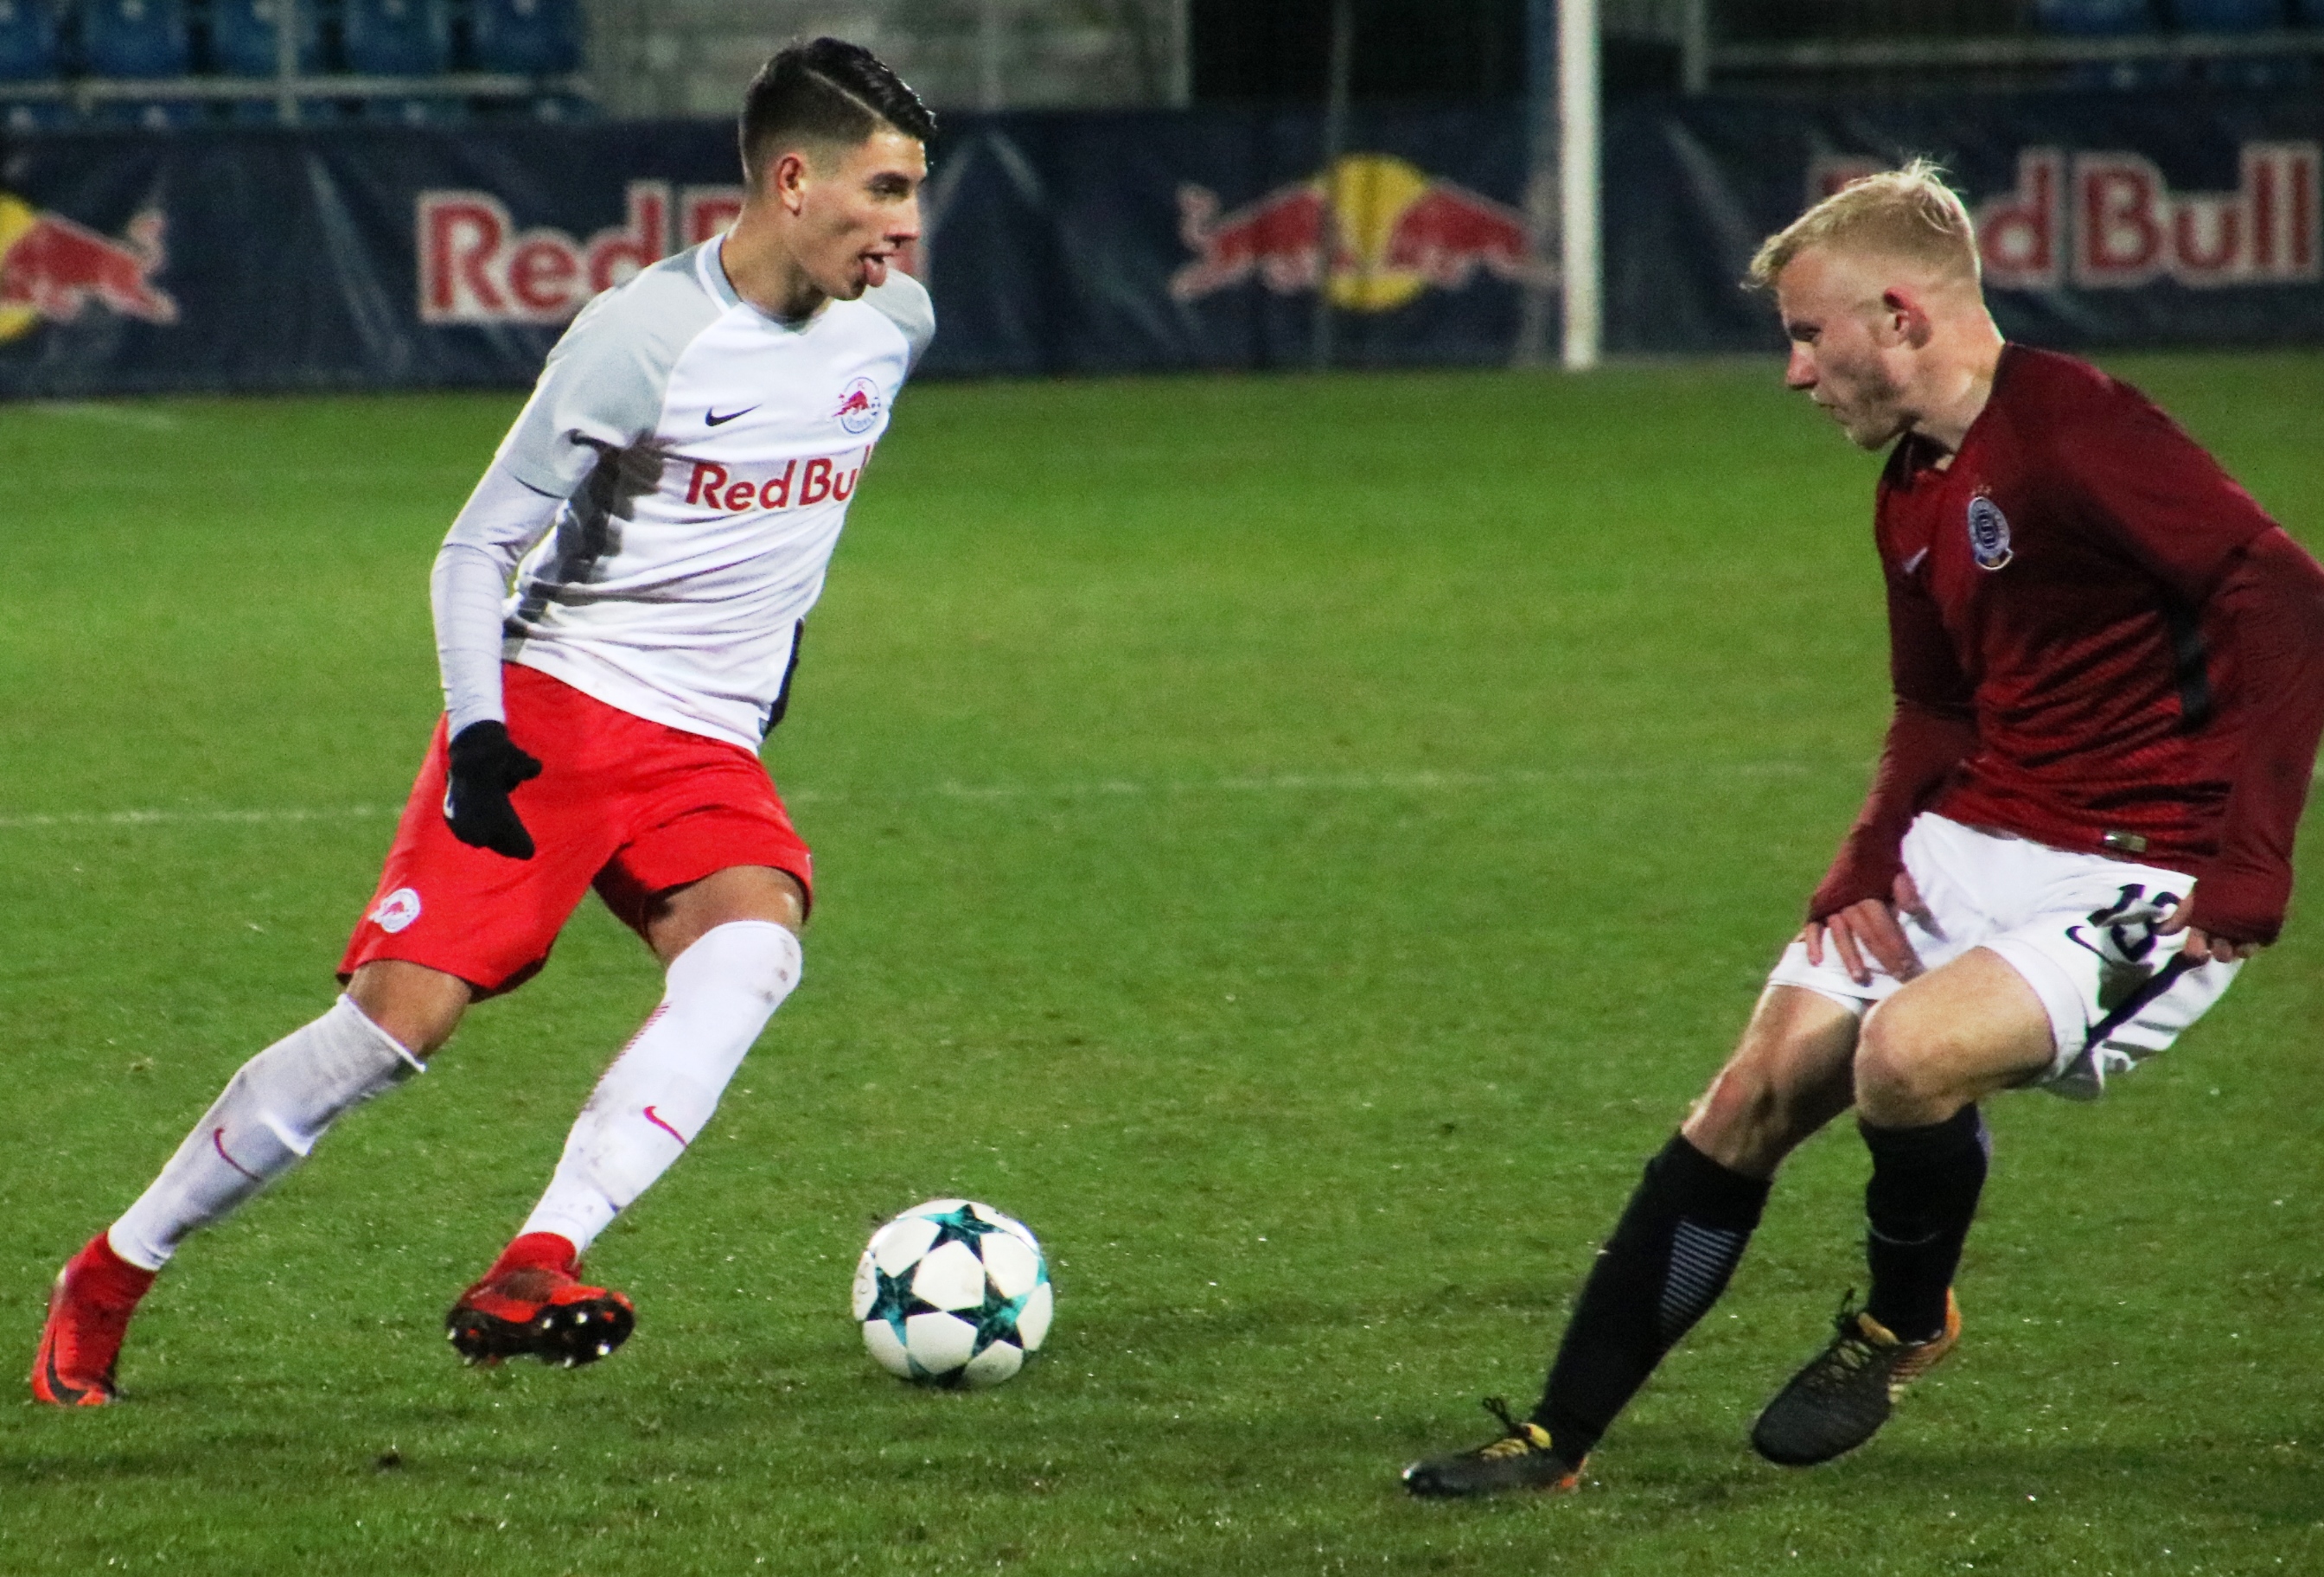 Crvena Zvezda 0-1 RB Leipzig - Xavi Simons 9' : r/soccer